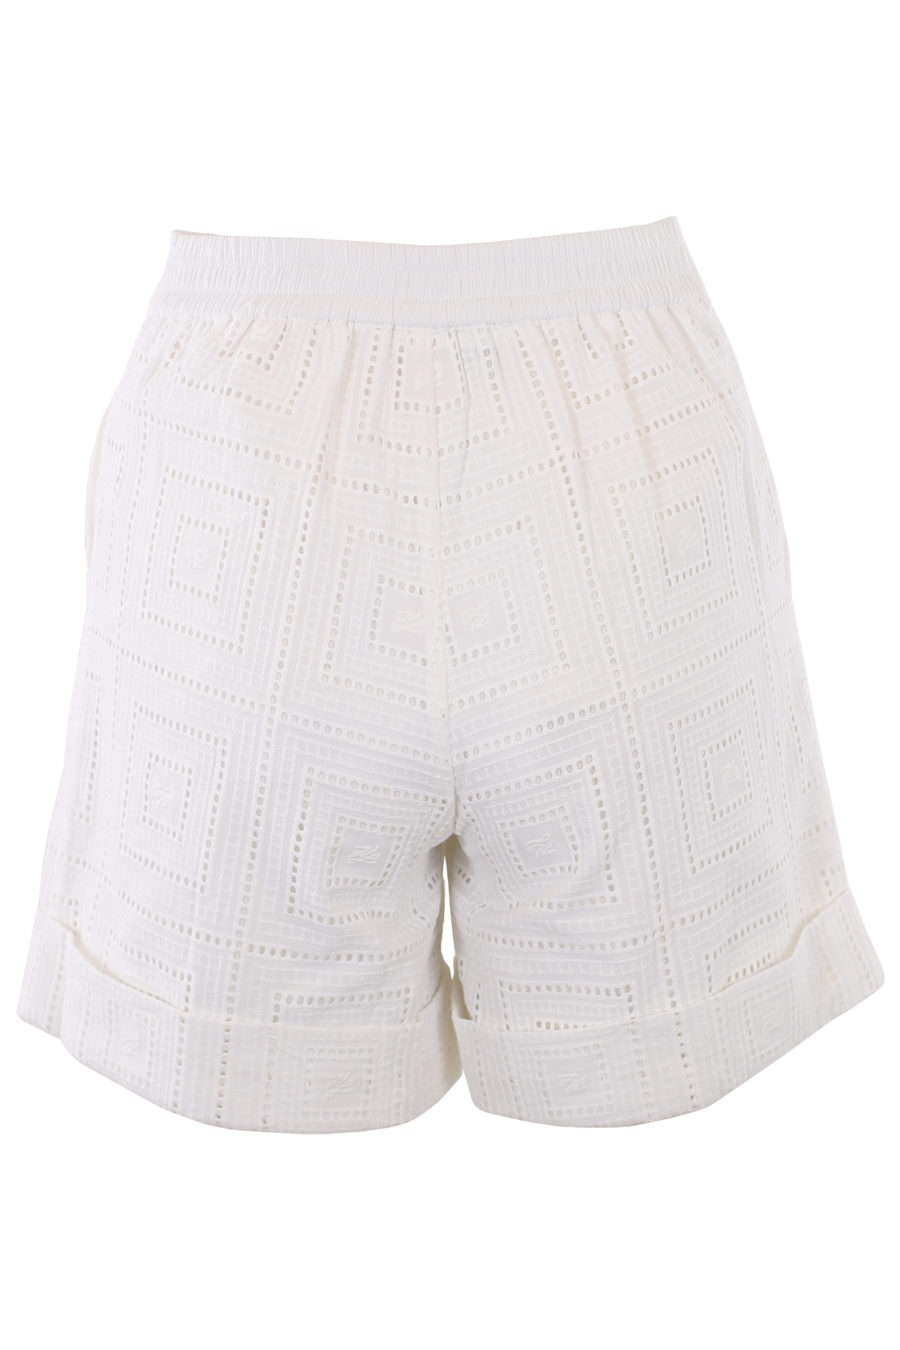 Pantalones cortos blancos bordados - IMG 1343